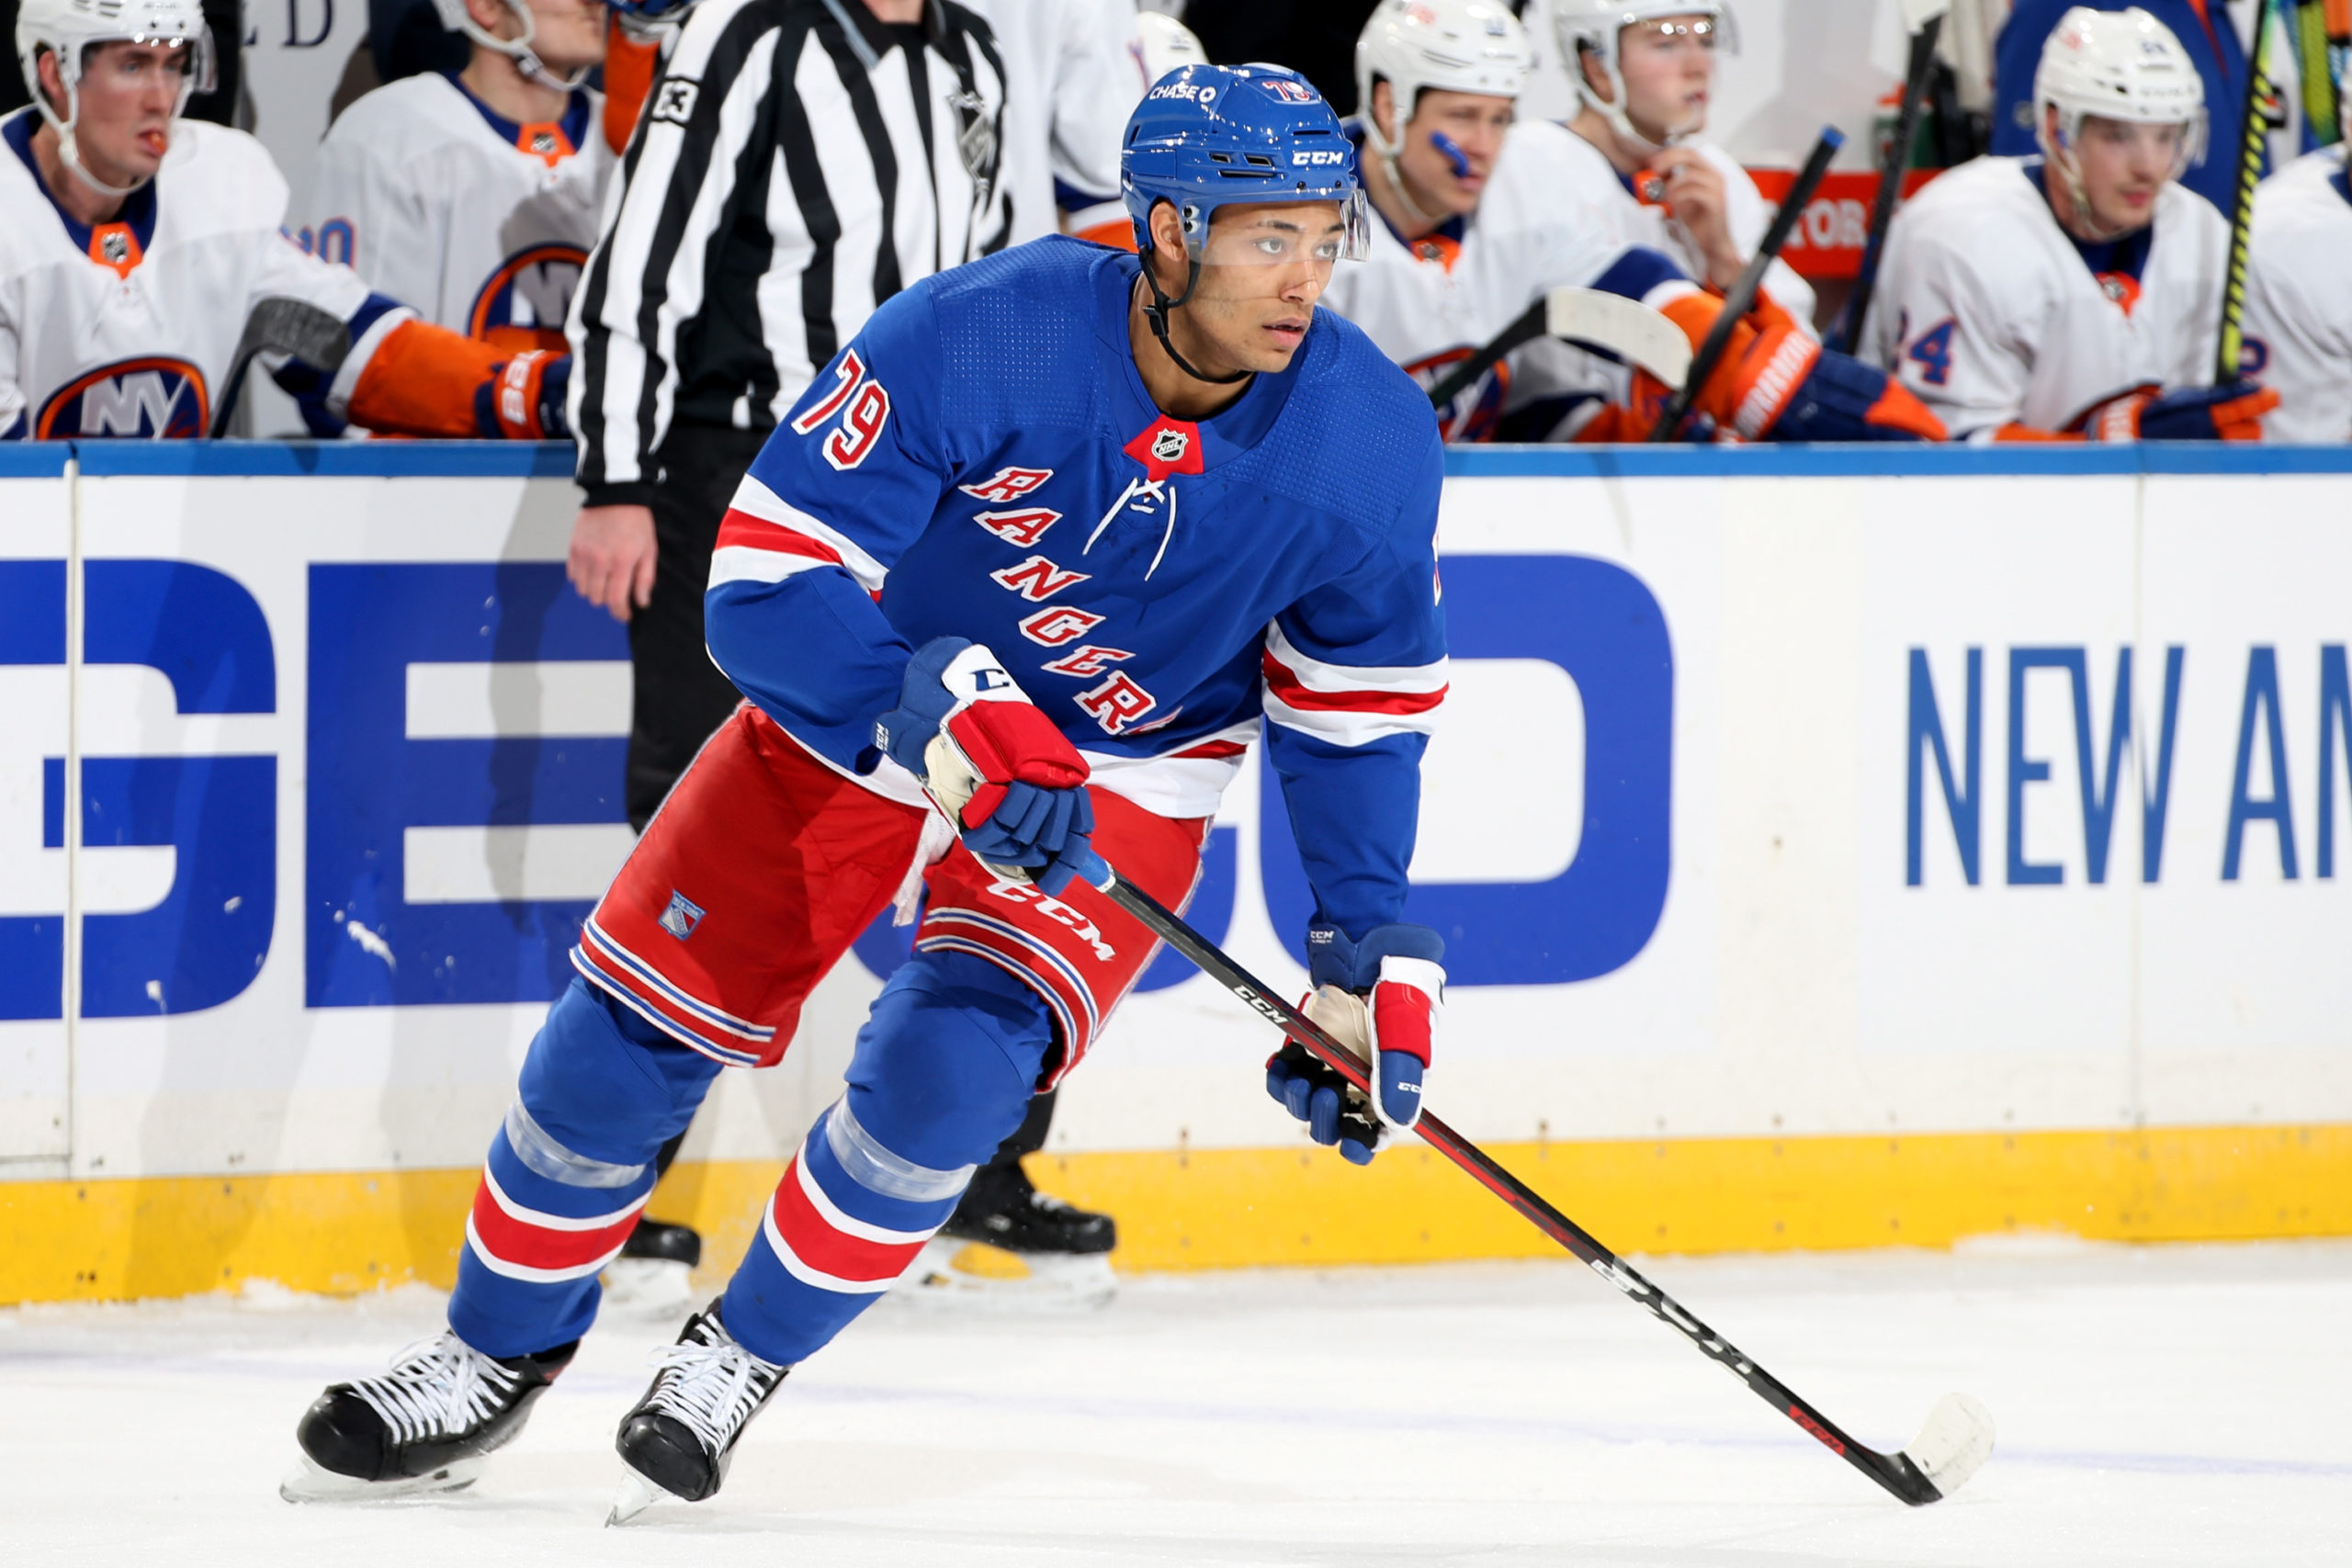 New York Rangers - OFFICIAL: #NYR have recalled Vitali Kravtsov